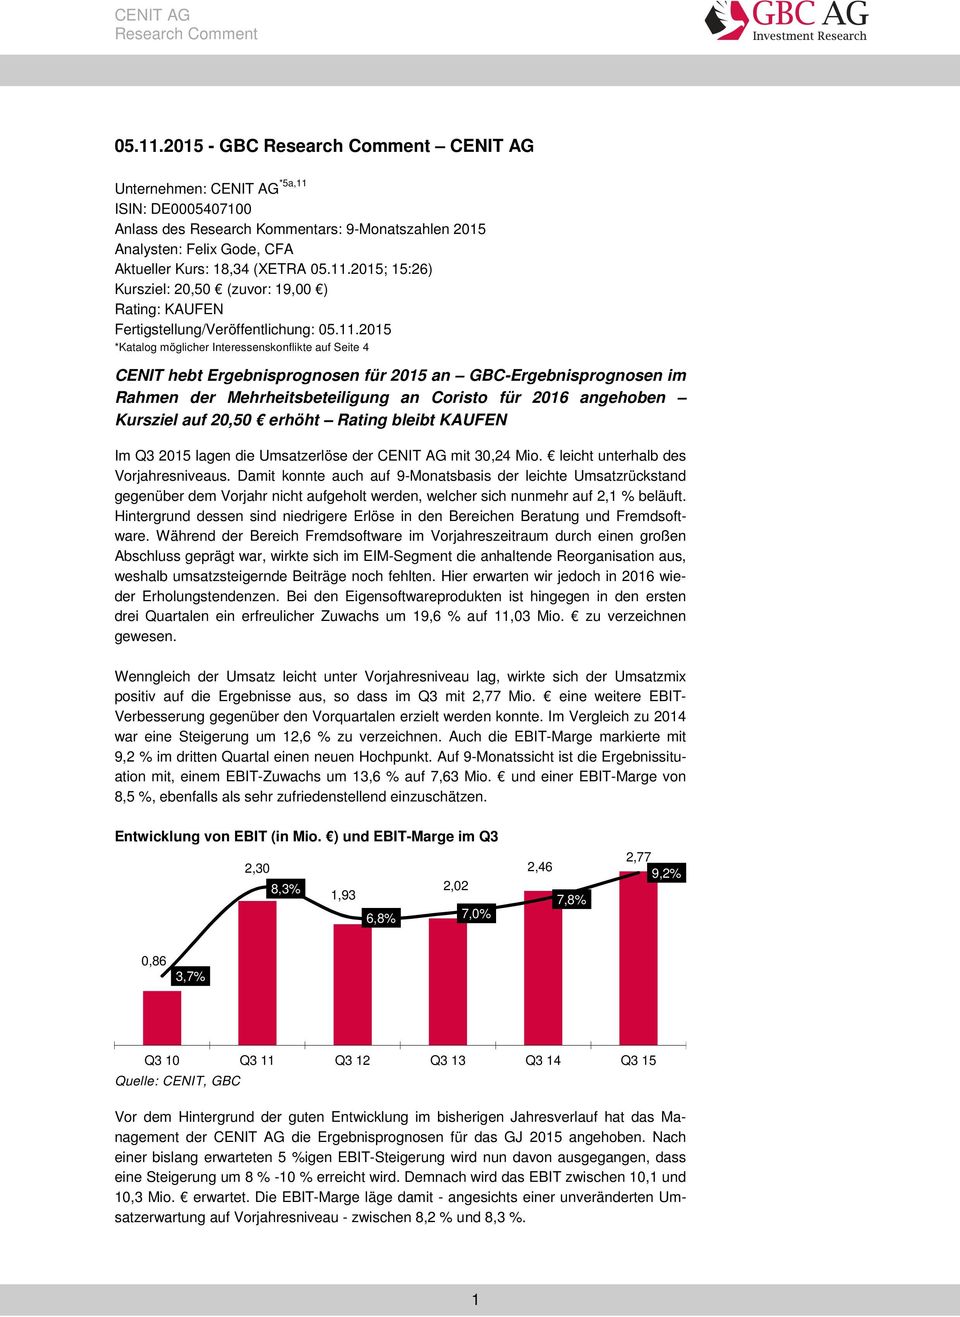 auf 20,50 erhöht Rating bleibt KAUFEN Im Q3 2015 lagen die Umsatzerlöse der CENIT AG mit 30,24 Mio. leicht unterhalb des Vorjahresniveaus.